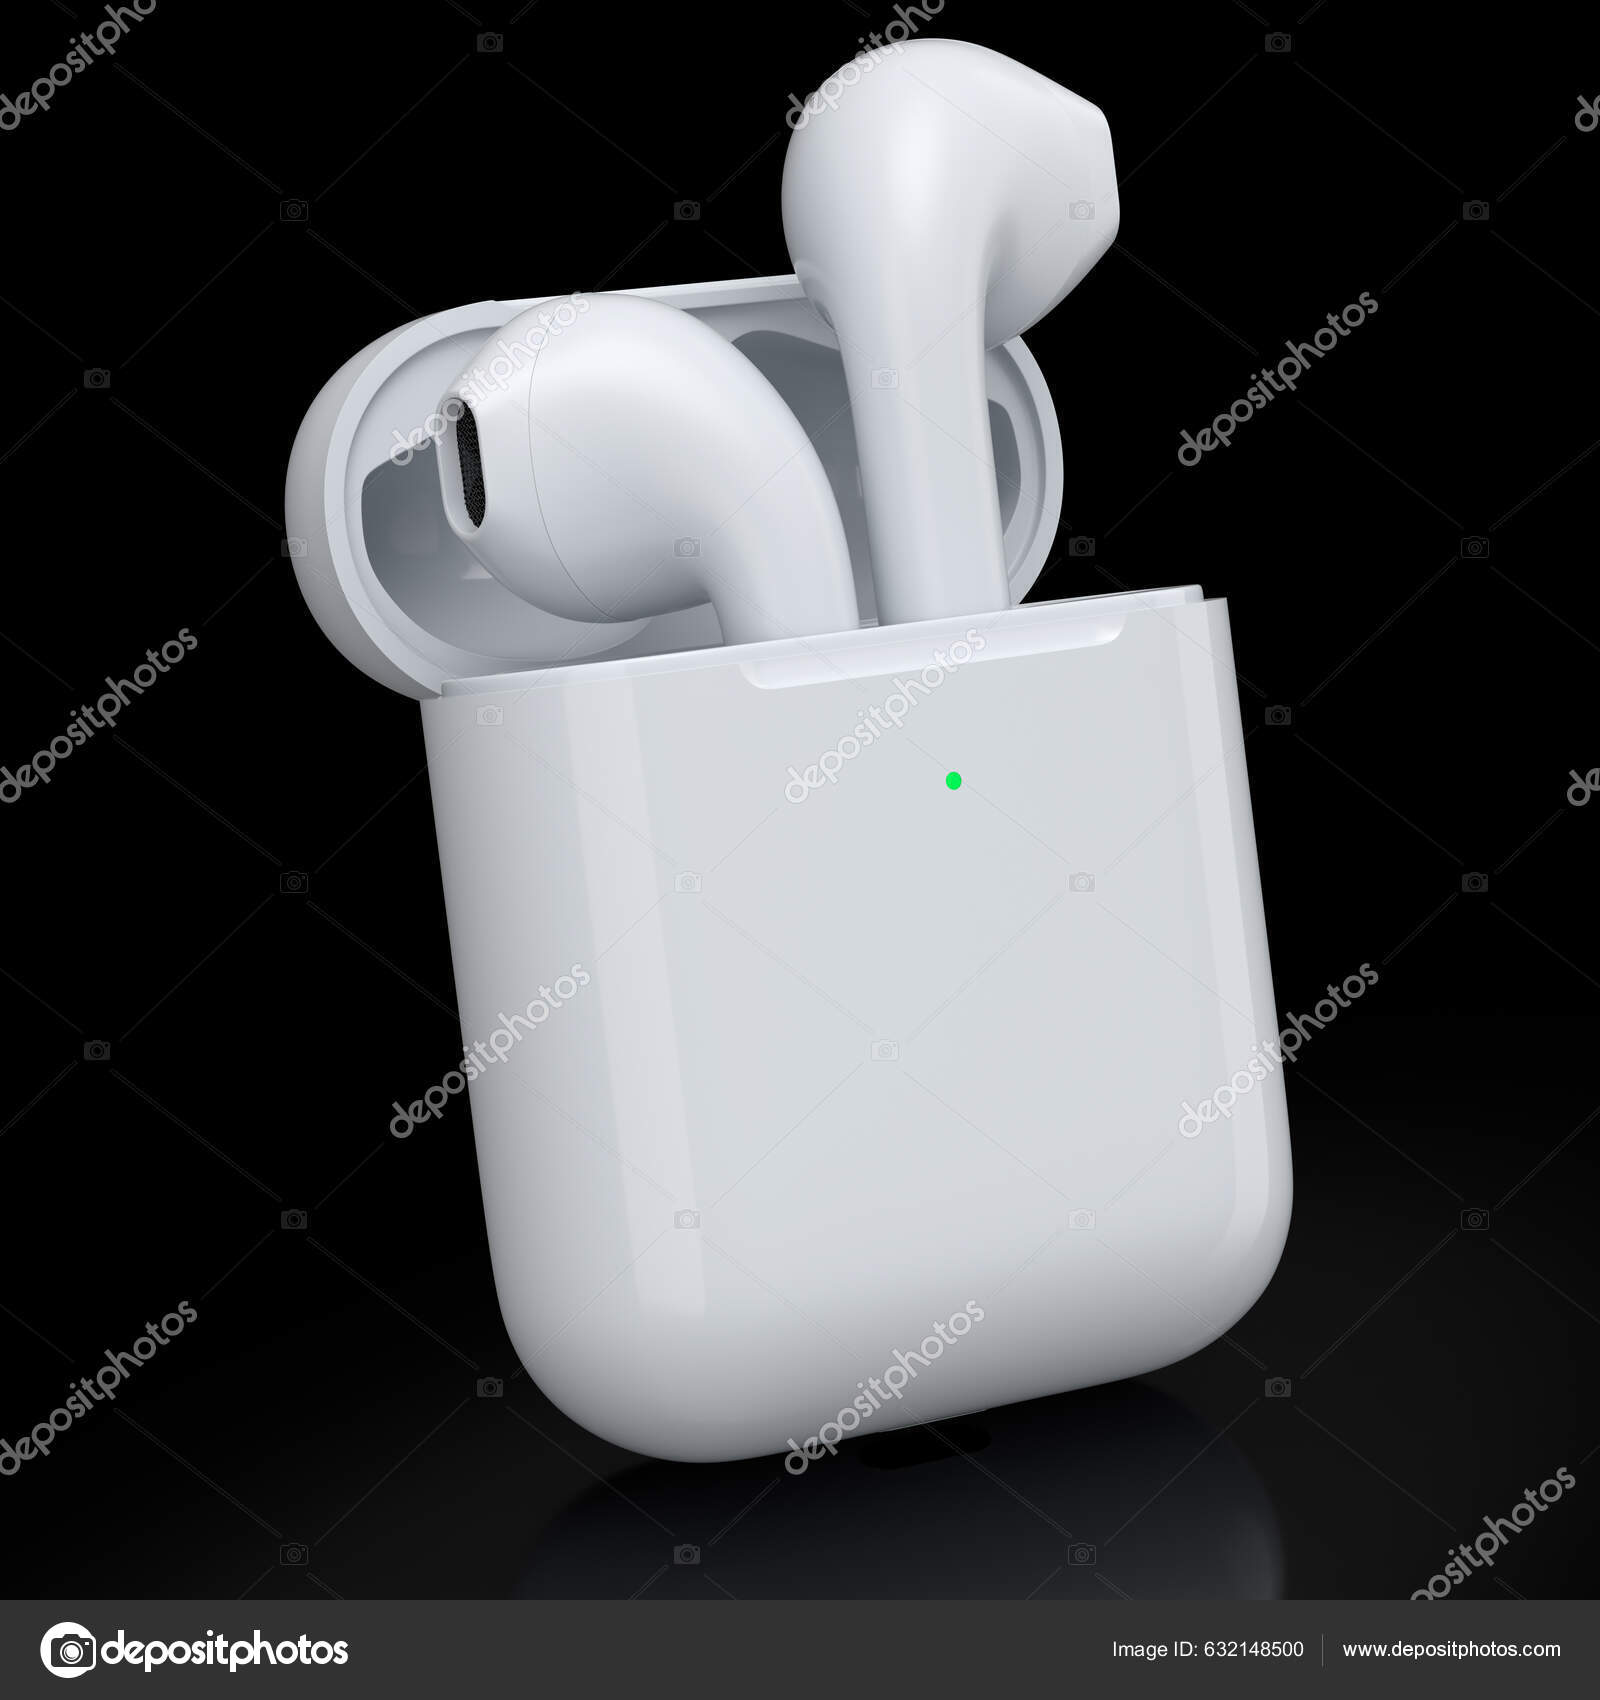 Fones de Ouvido Bluetooth - s/fio - Caixa Apple - Pretos